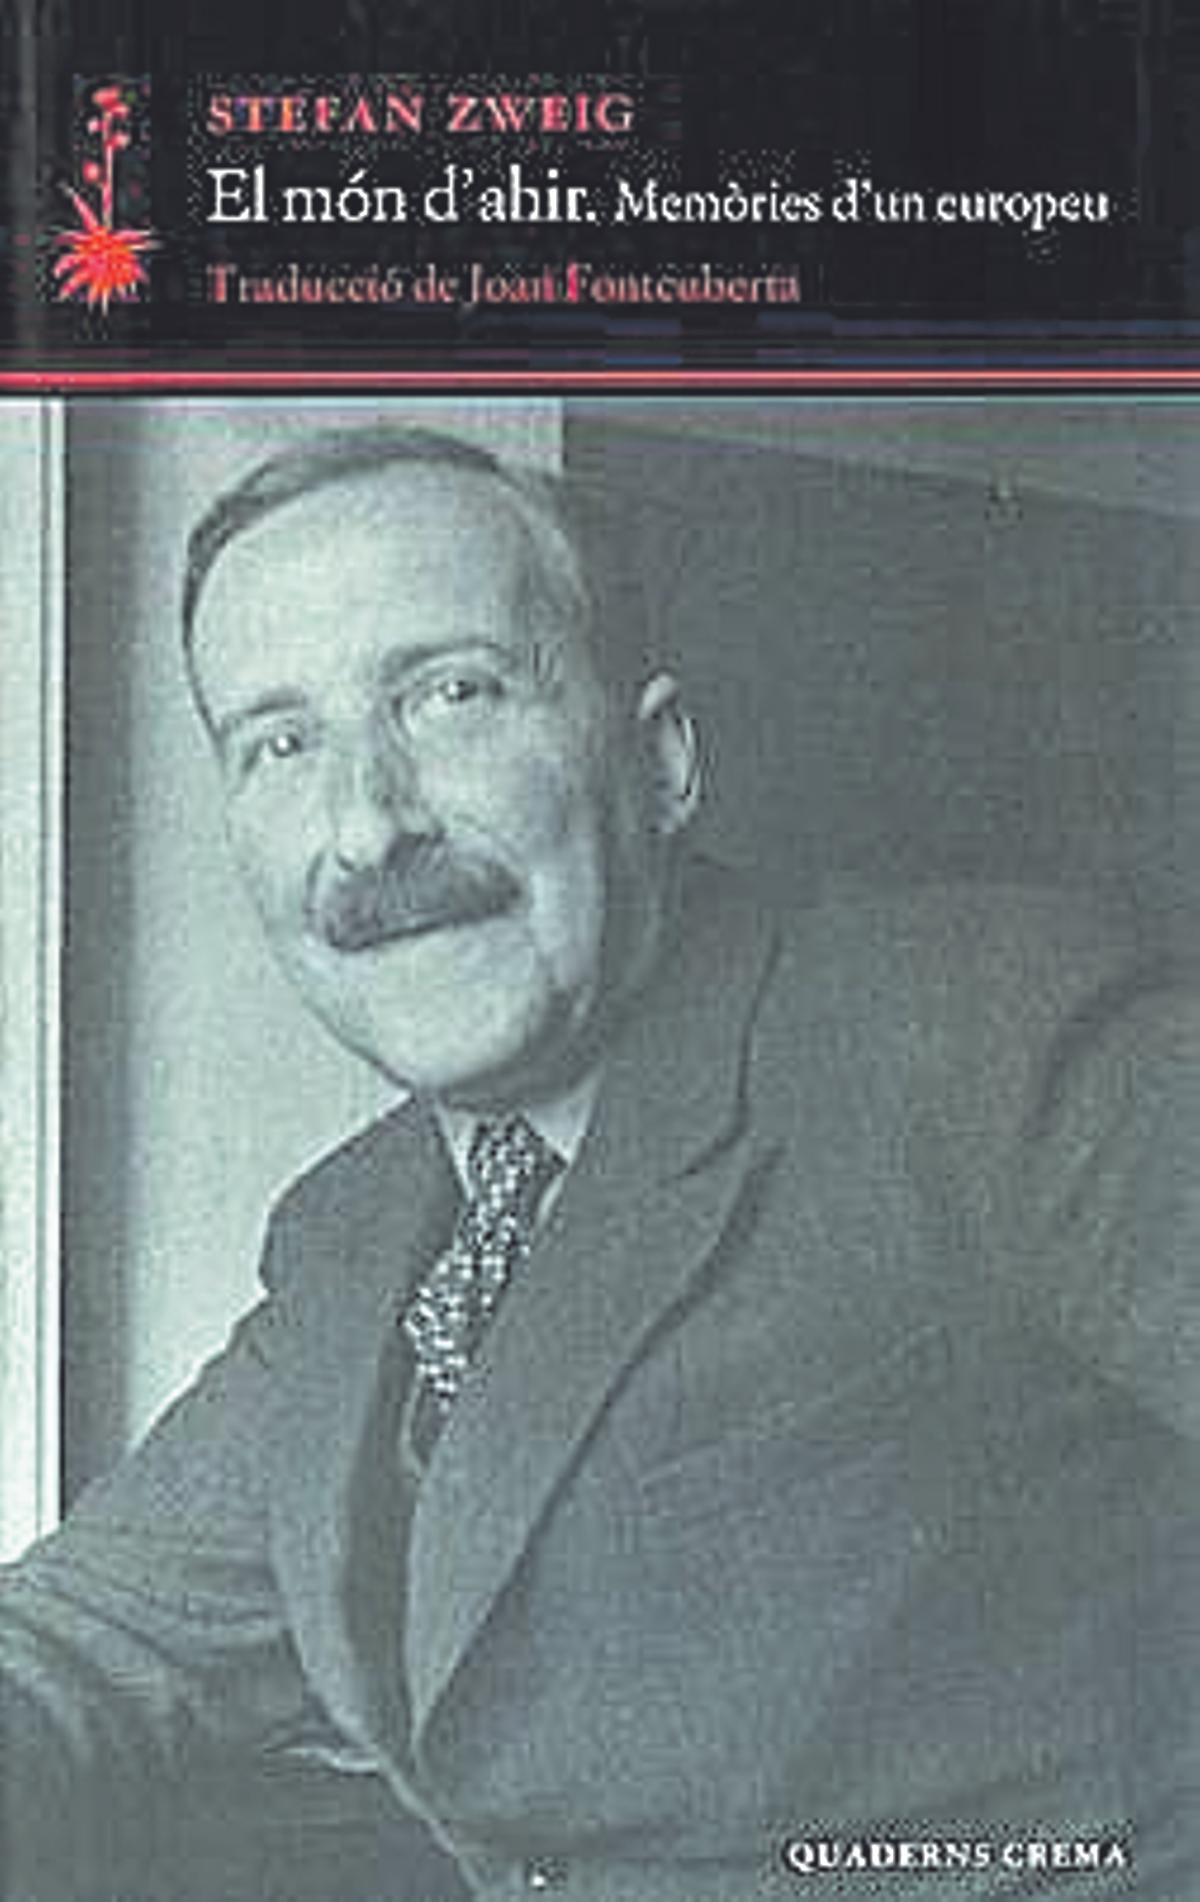 Portada del llibre: El món d’ahir, de Stefan Zweig.